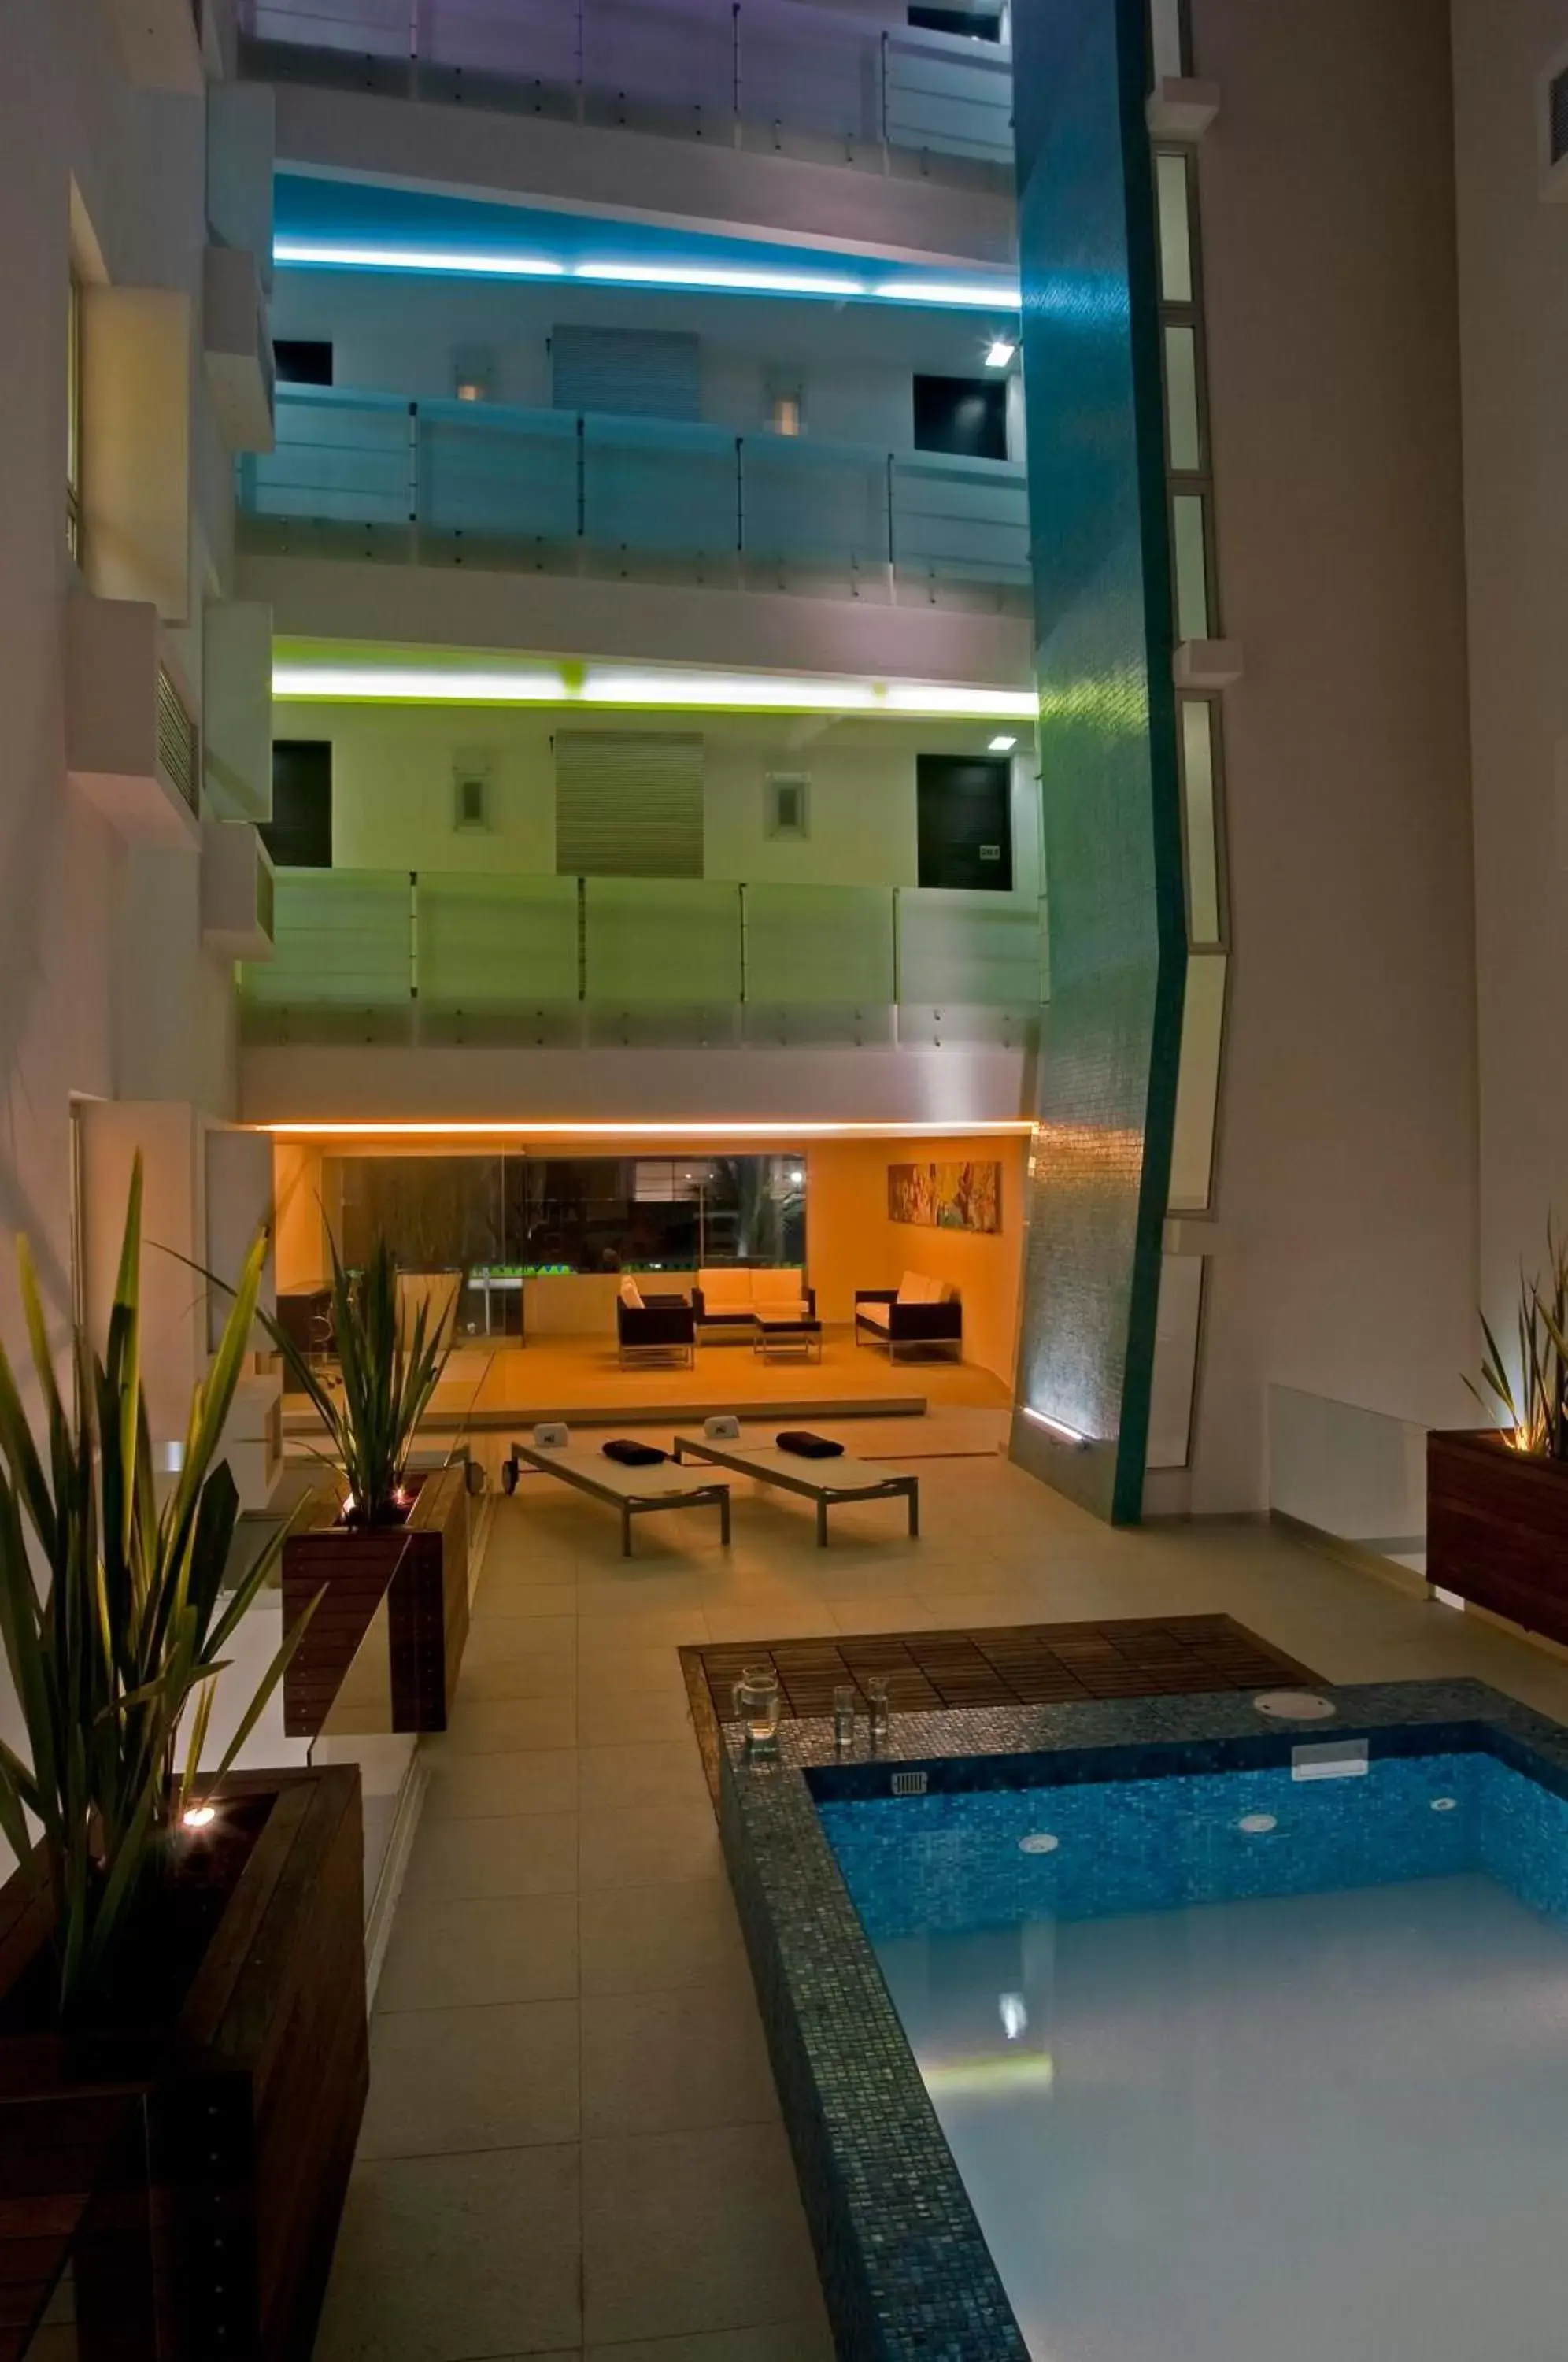 Swimming Pool in Nu Hotel